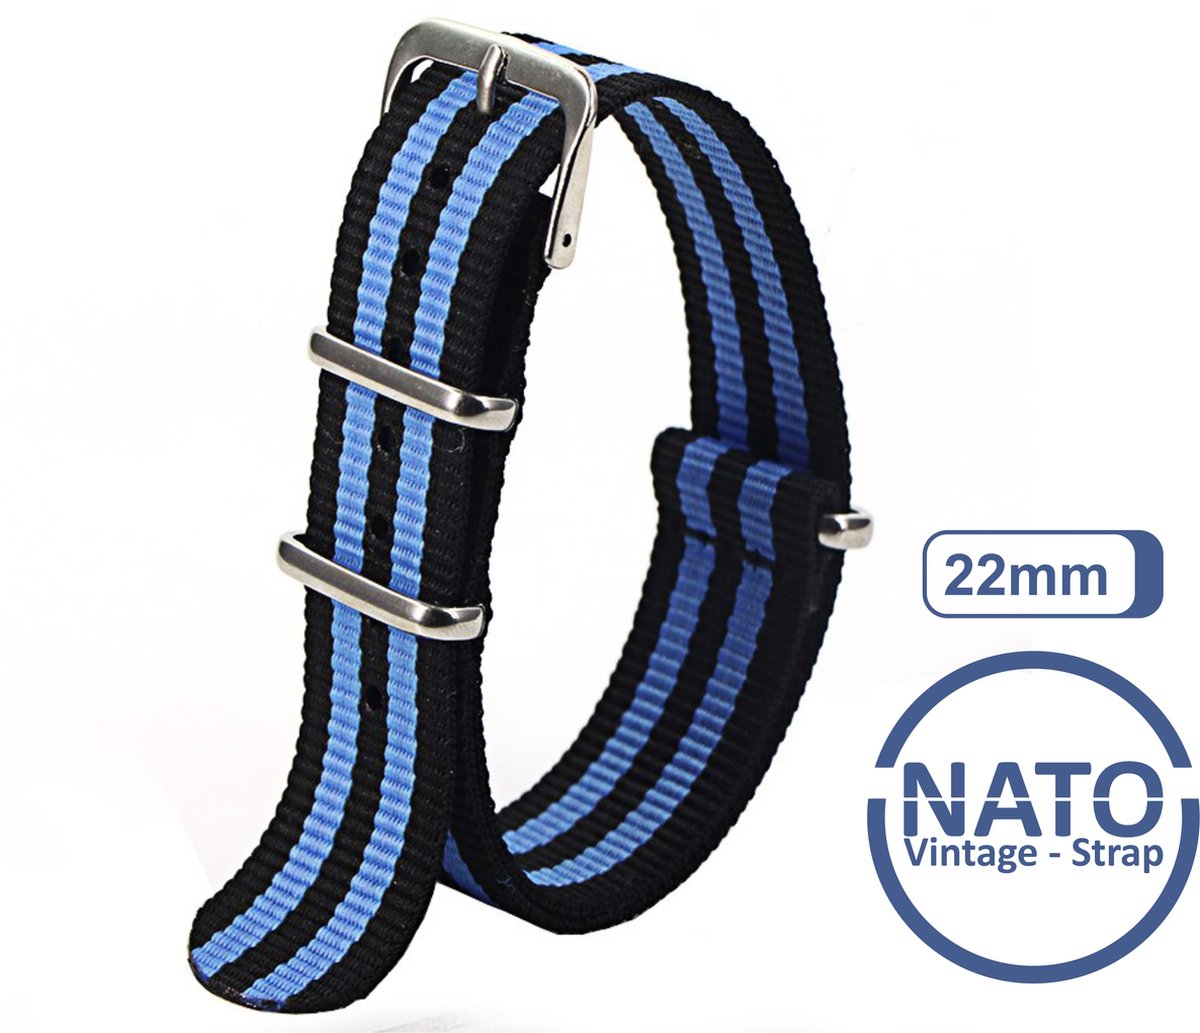 22mm Nato Strap Zwart Blauw streep - Vintage James Bond - Nato Strap collectie - Mannen - Gestreept -- Horlogebanden - 22 mm bandbreedte voor oa. Seiko Rolex Omega Casio en Citizen